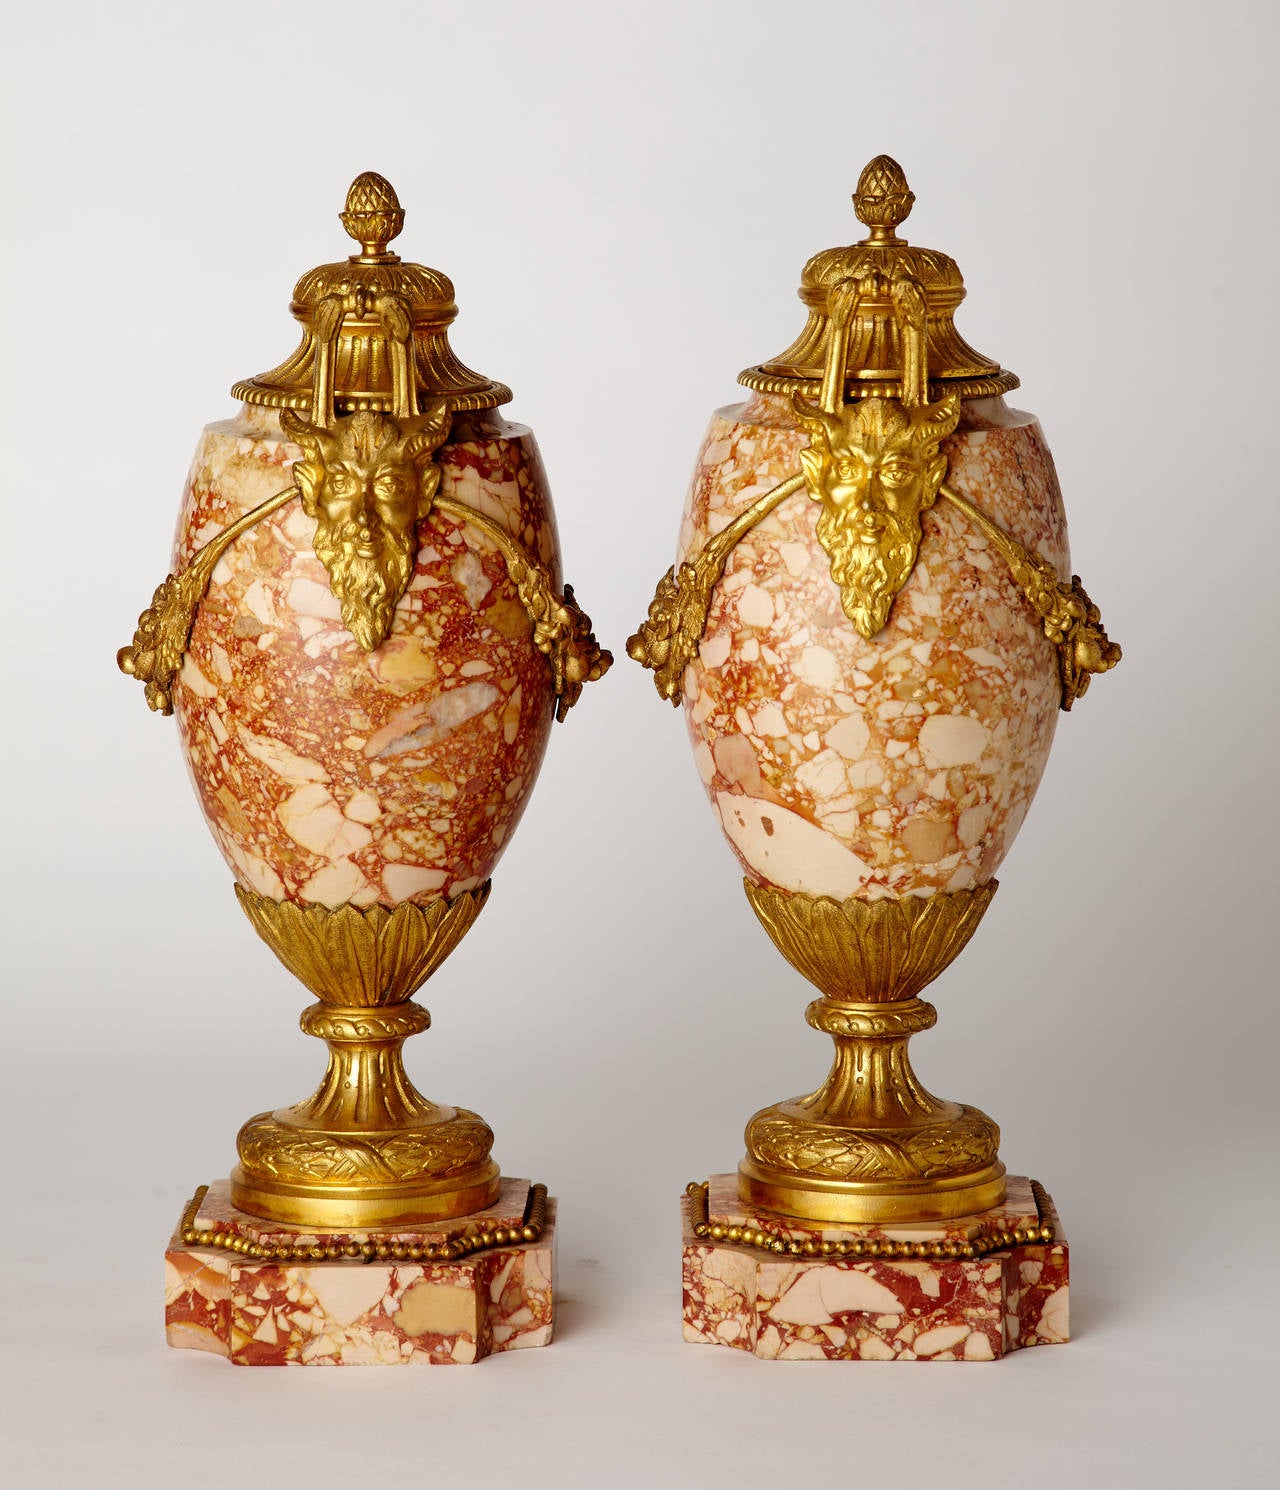 Zwei französische Marmorvasen im Stil Ludwigs XVI. um 1900 mit fein gearbeiteten, vergoldeten Bronzebeschlägen. Die vergoldeten Bronzeschwänze enden in Griffen, die durch Satyrmasken verankert sind. Abnehmbare Deckel aus vergoldeter Bronze.